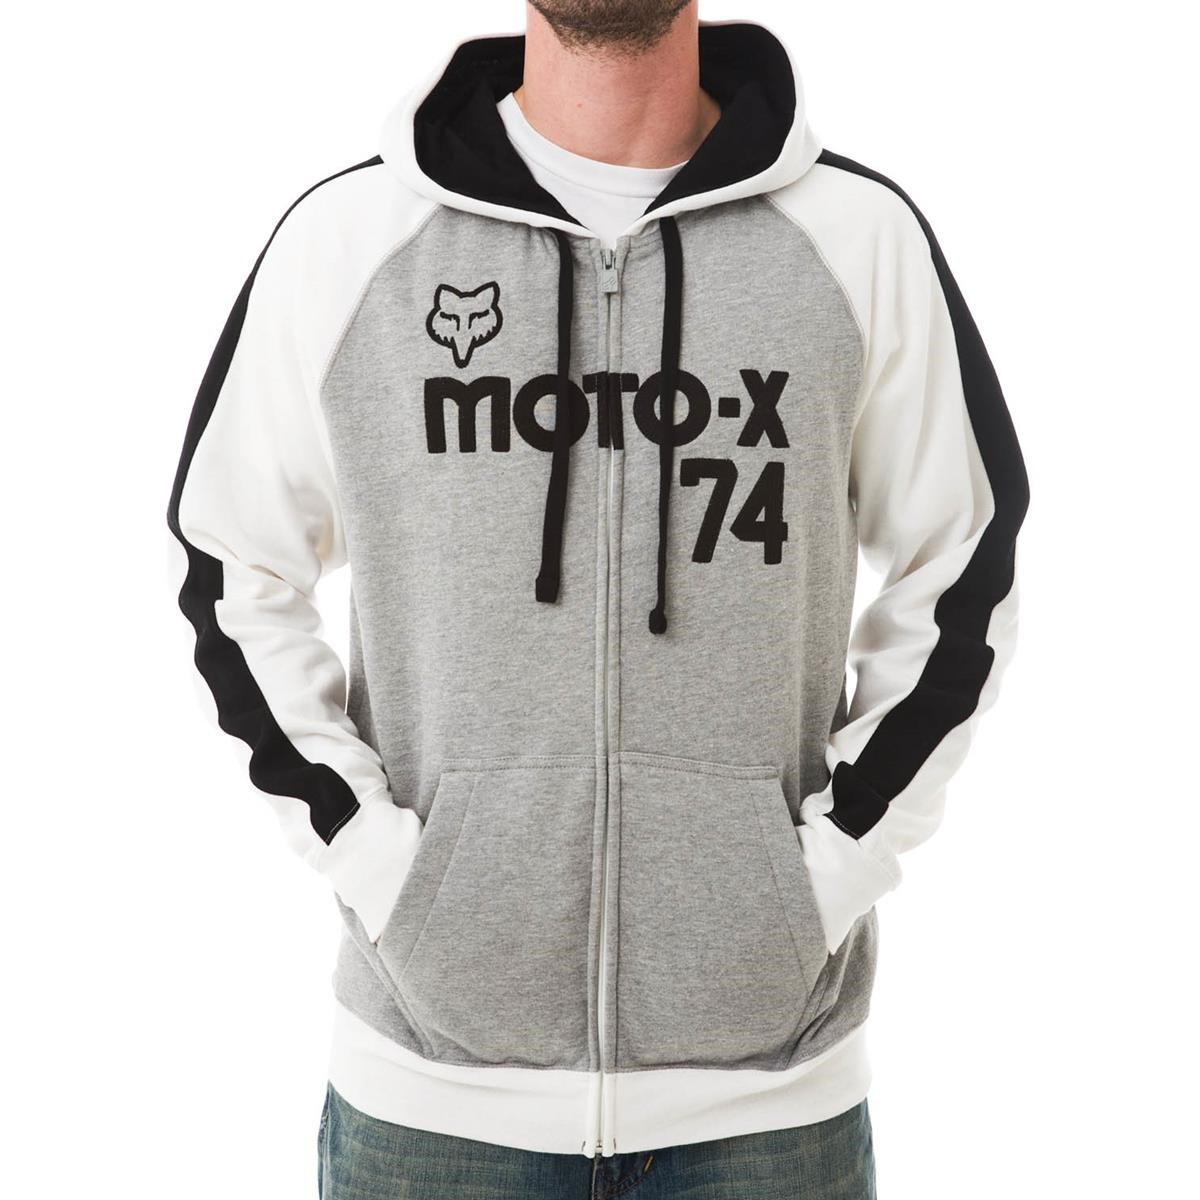 Freizeit/Streetwear Bekleidung-Hoodies - Fox Zip Hoody Moto-X Classic Combo Heather Grey